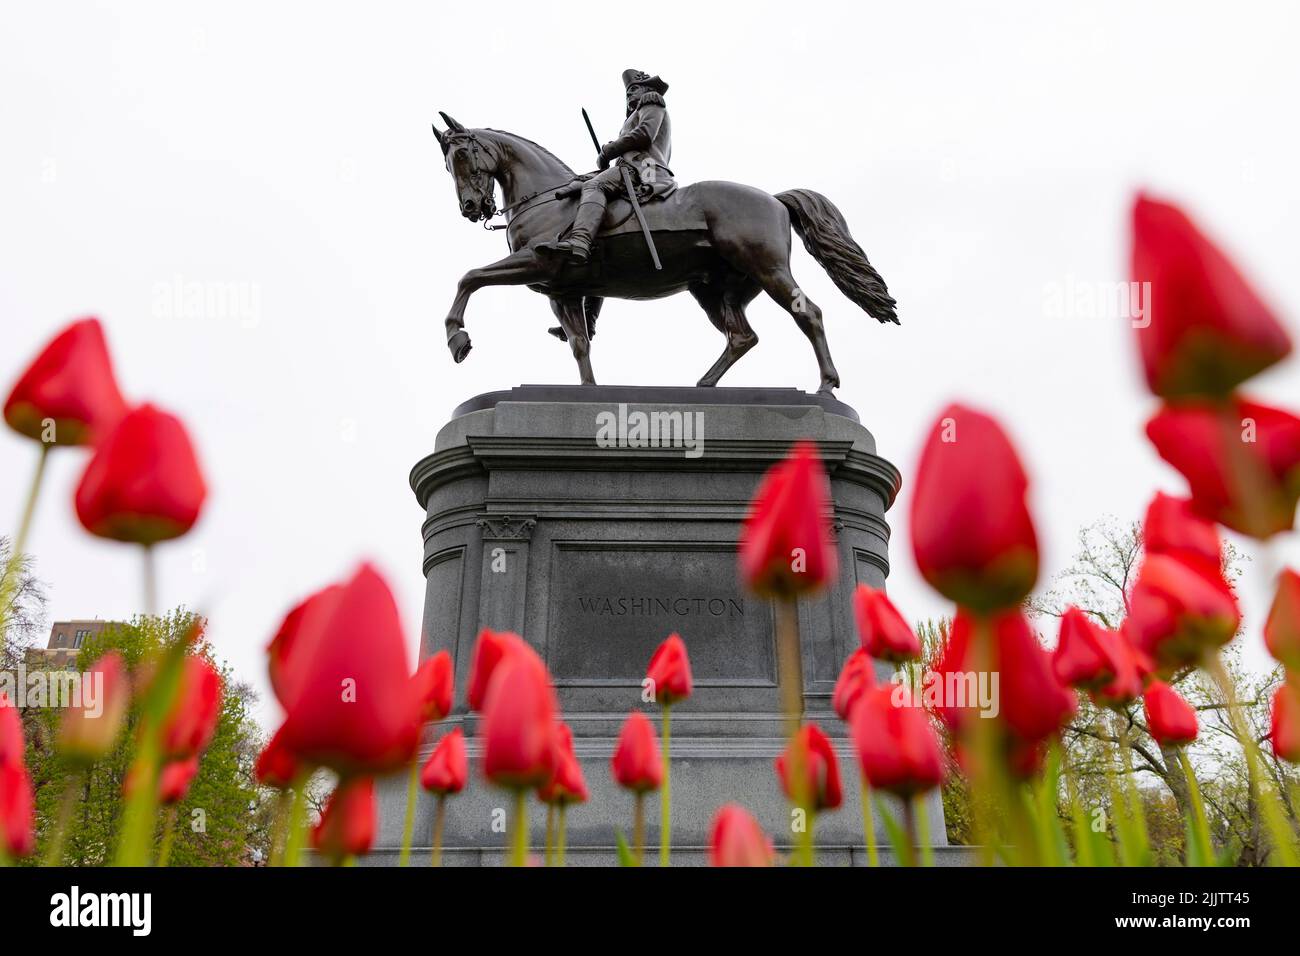 Reiterstatue von George Washington mit roten Tulpen im Vordergrund. Boston Public Garden, Boston, Massachusetts, Usa. Stockfoto